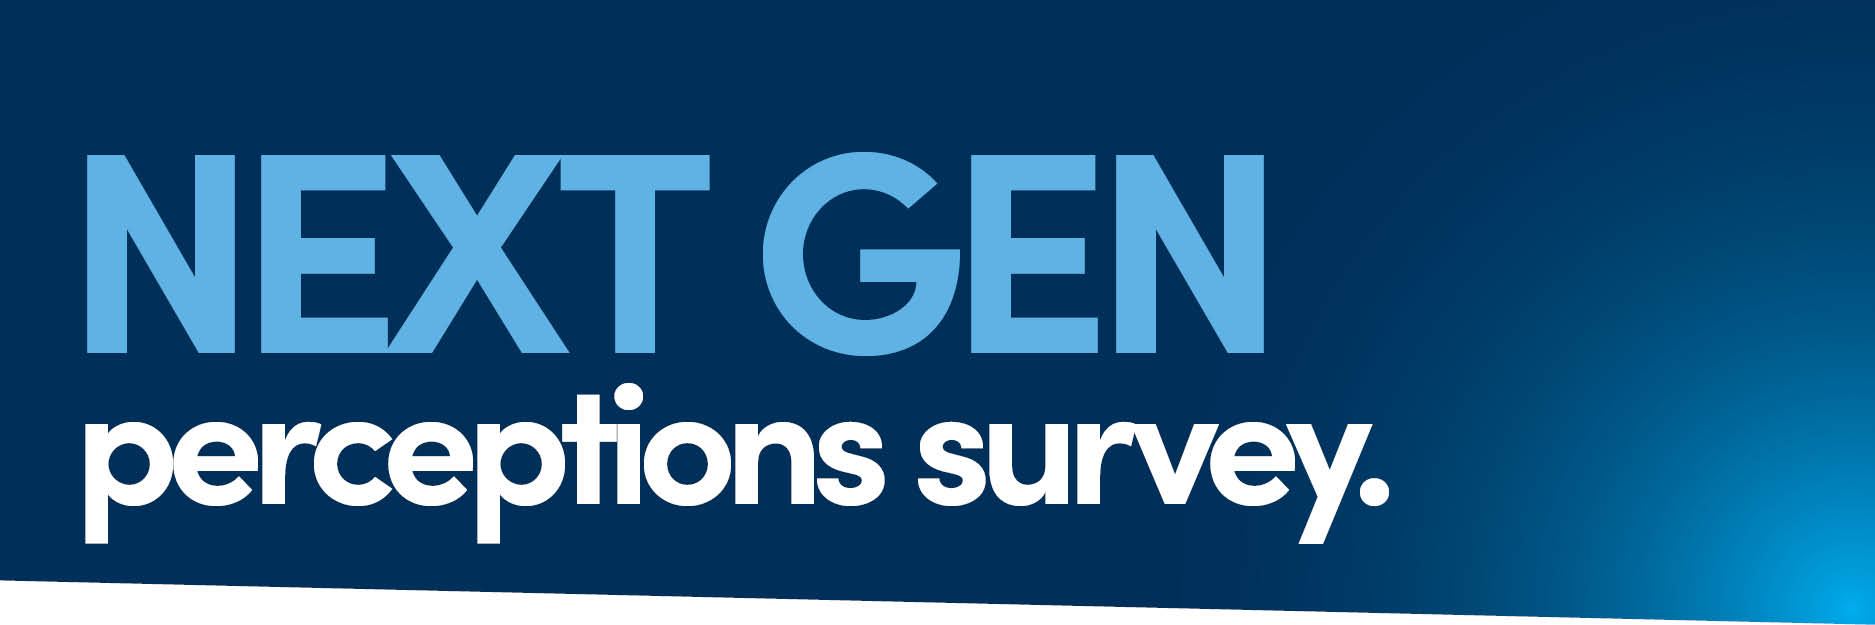 Lend Your Voice to Our NEXT GEN Perceptions Survey